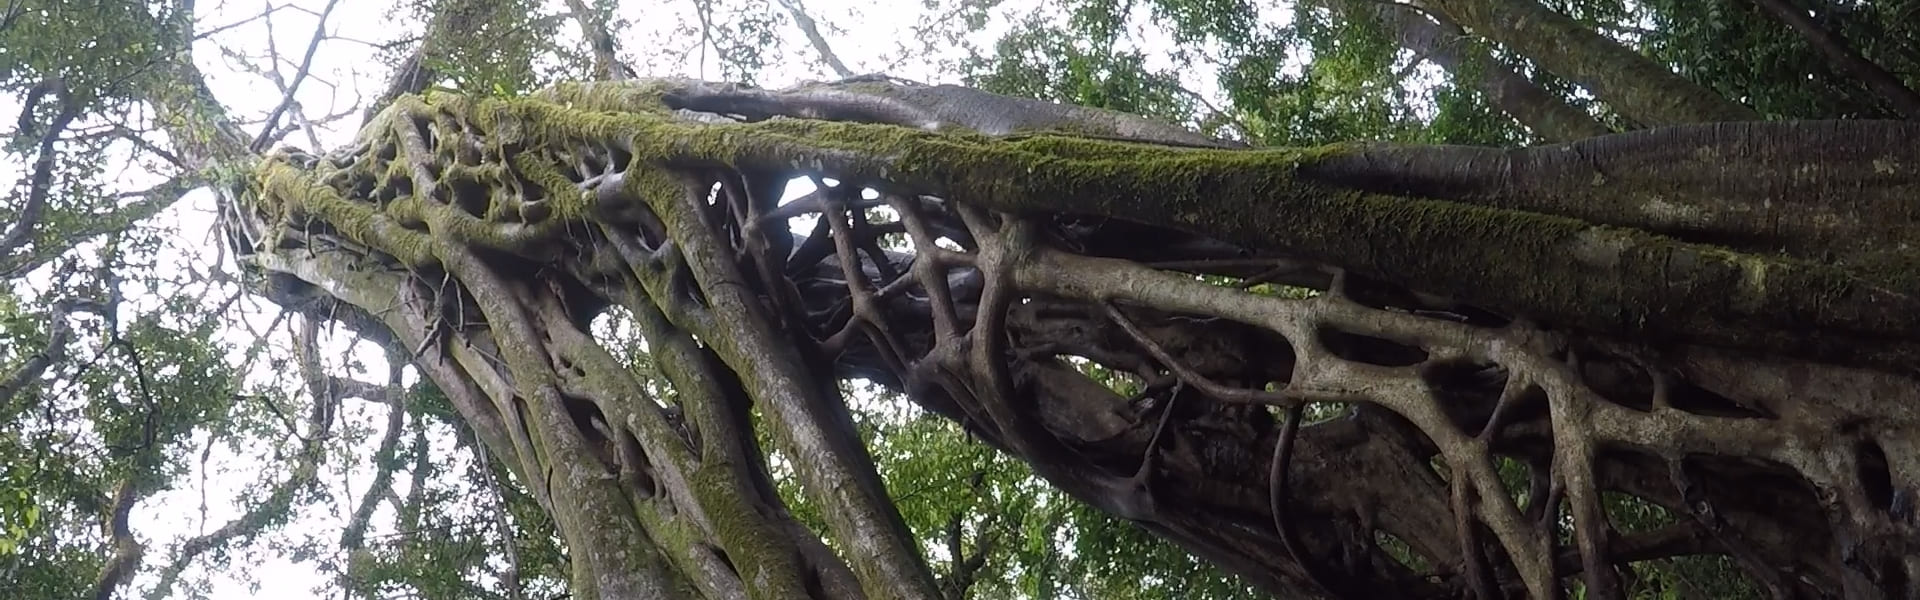 Escalada a la cima del árbol en Monteverde